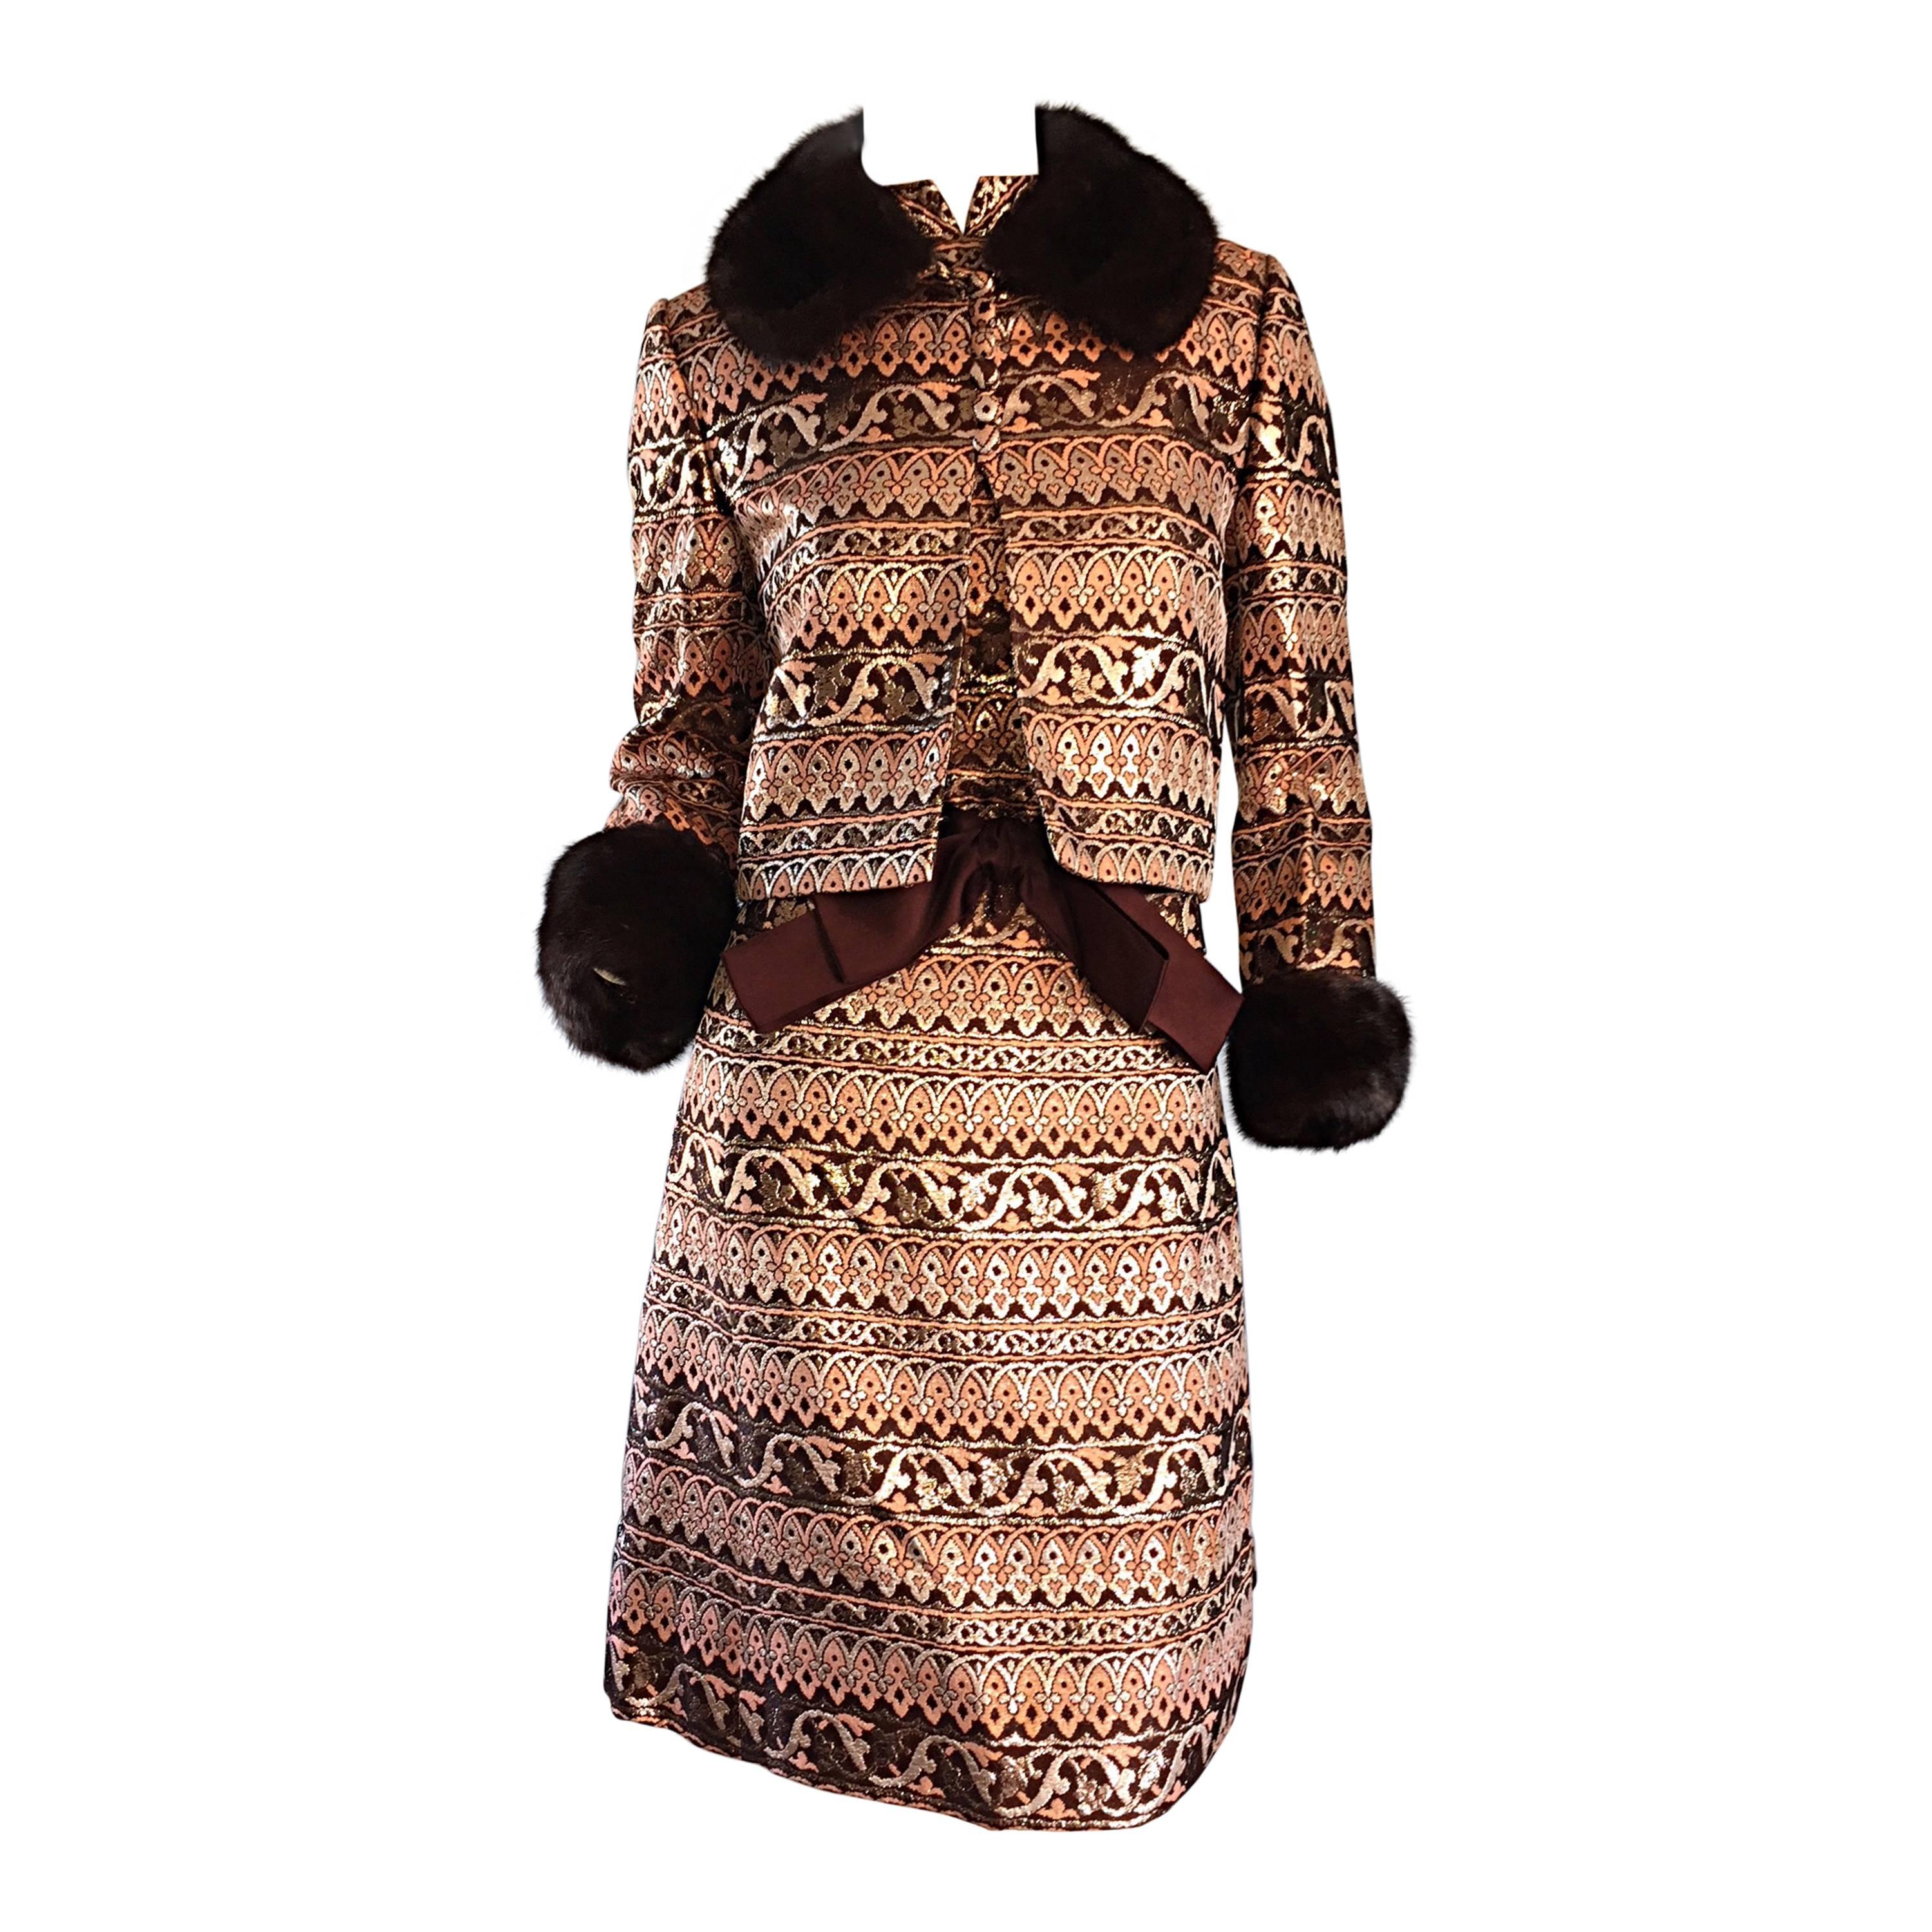 Amazing Early Adele Simpson 1960s 60s Metallic Brocade Dress & Mink Fur Jacket